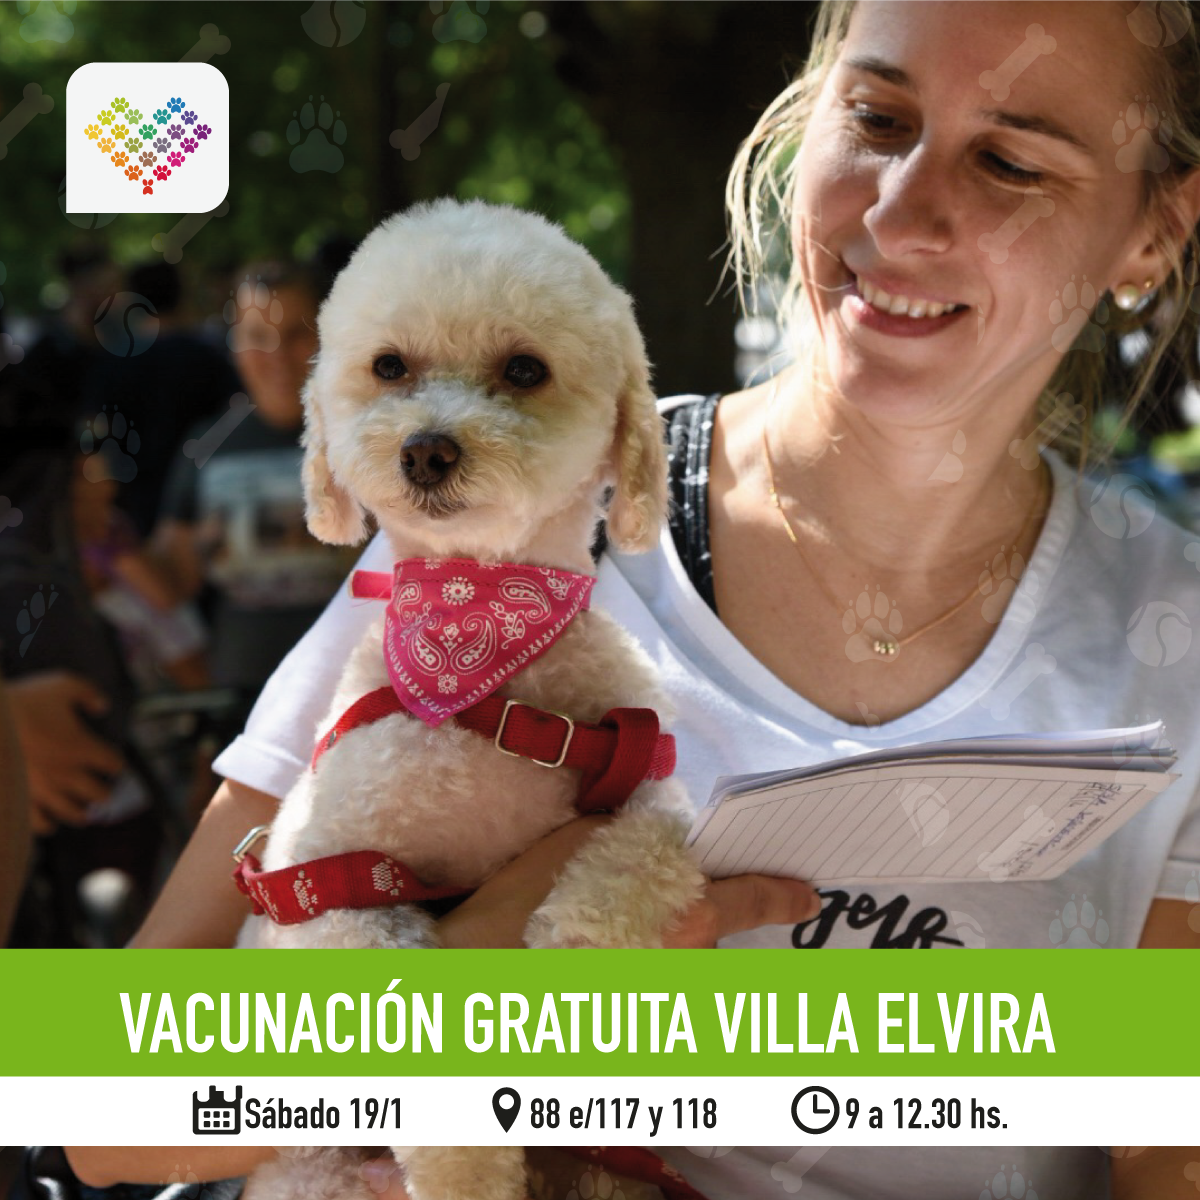  Continúa la campaña de asistencia veterinaria en distintos puntos de la ciudad